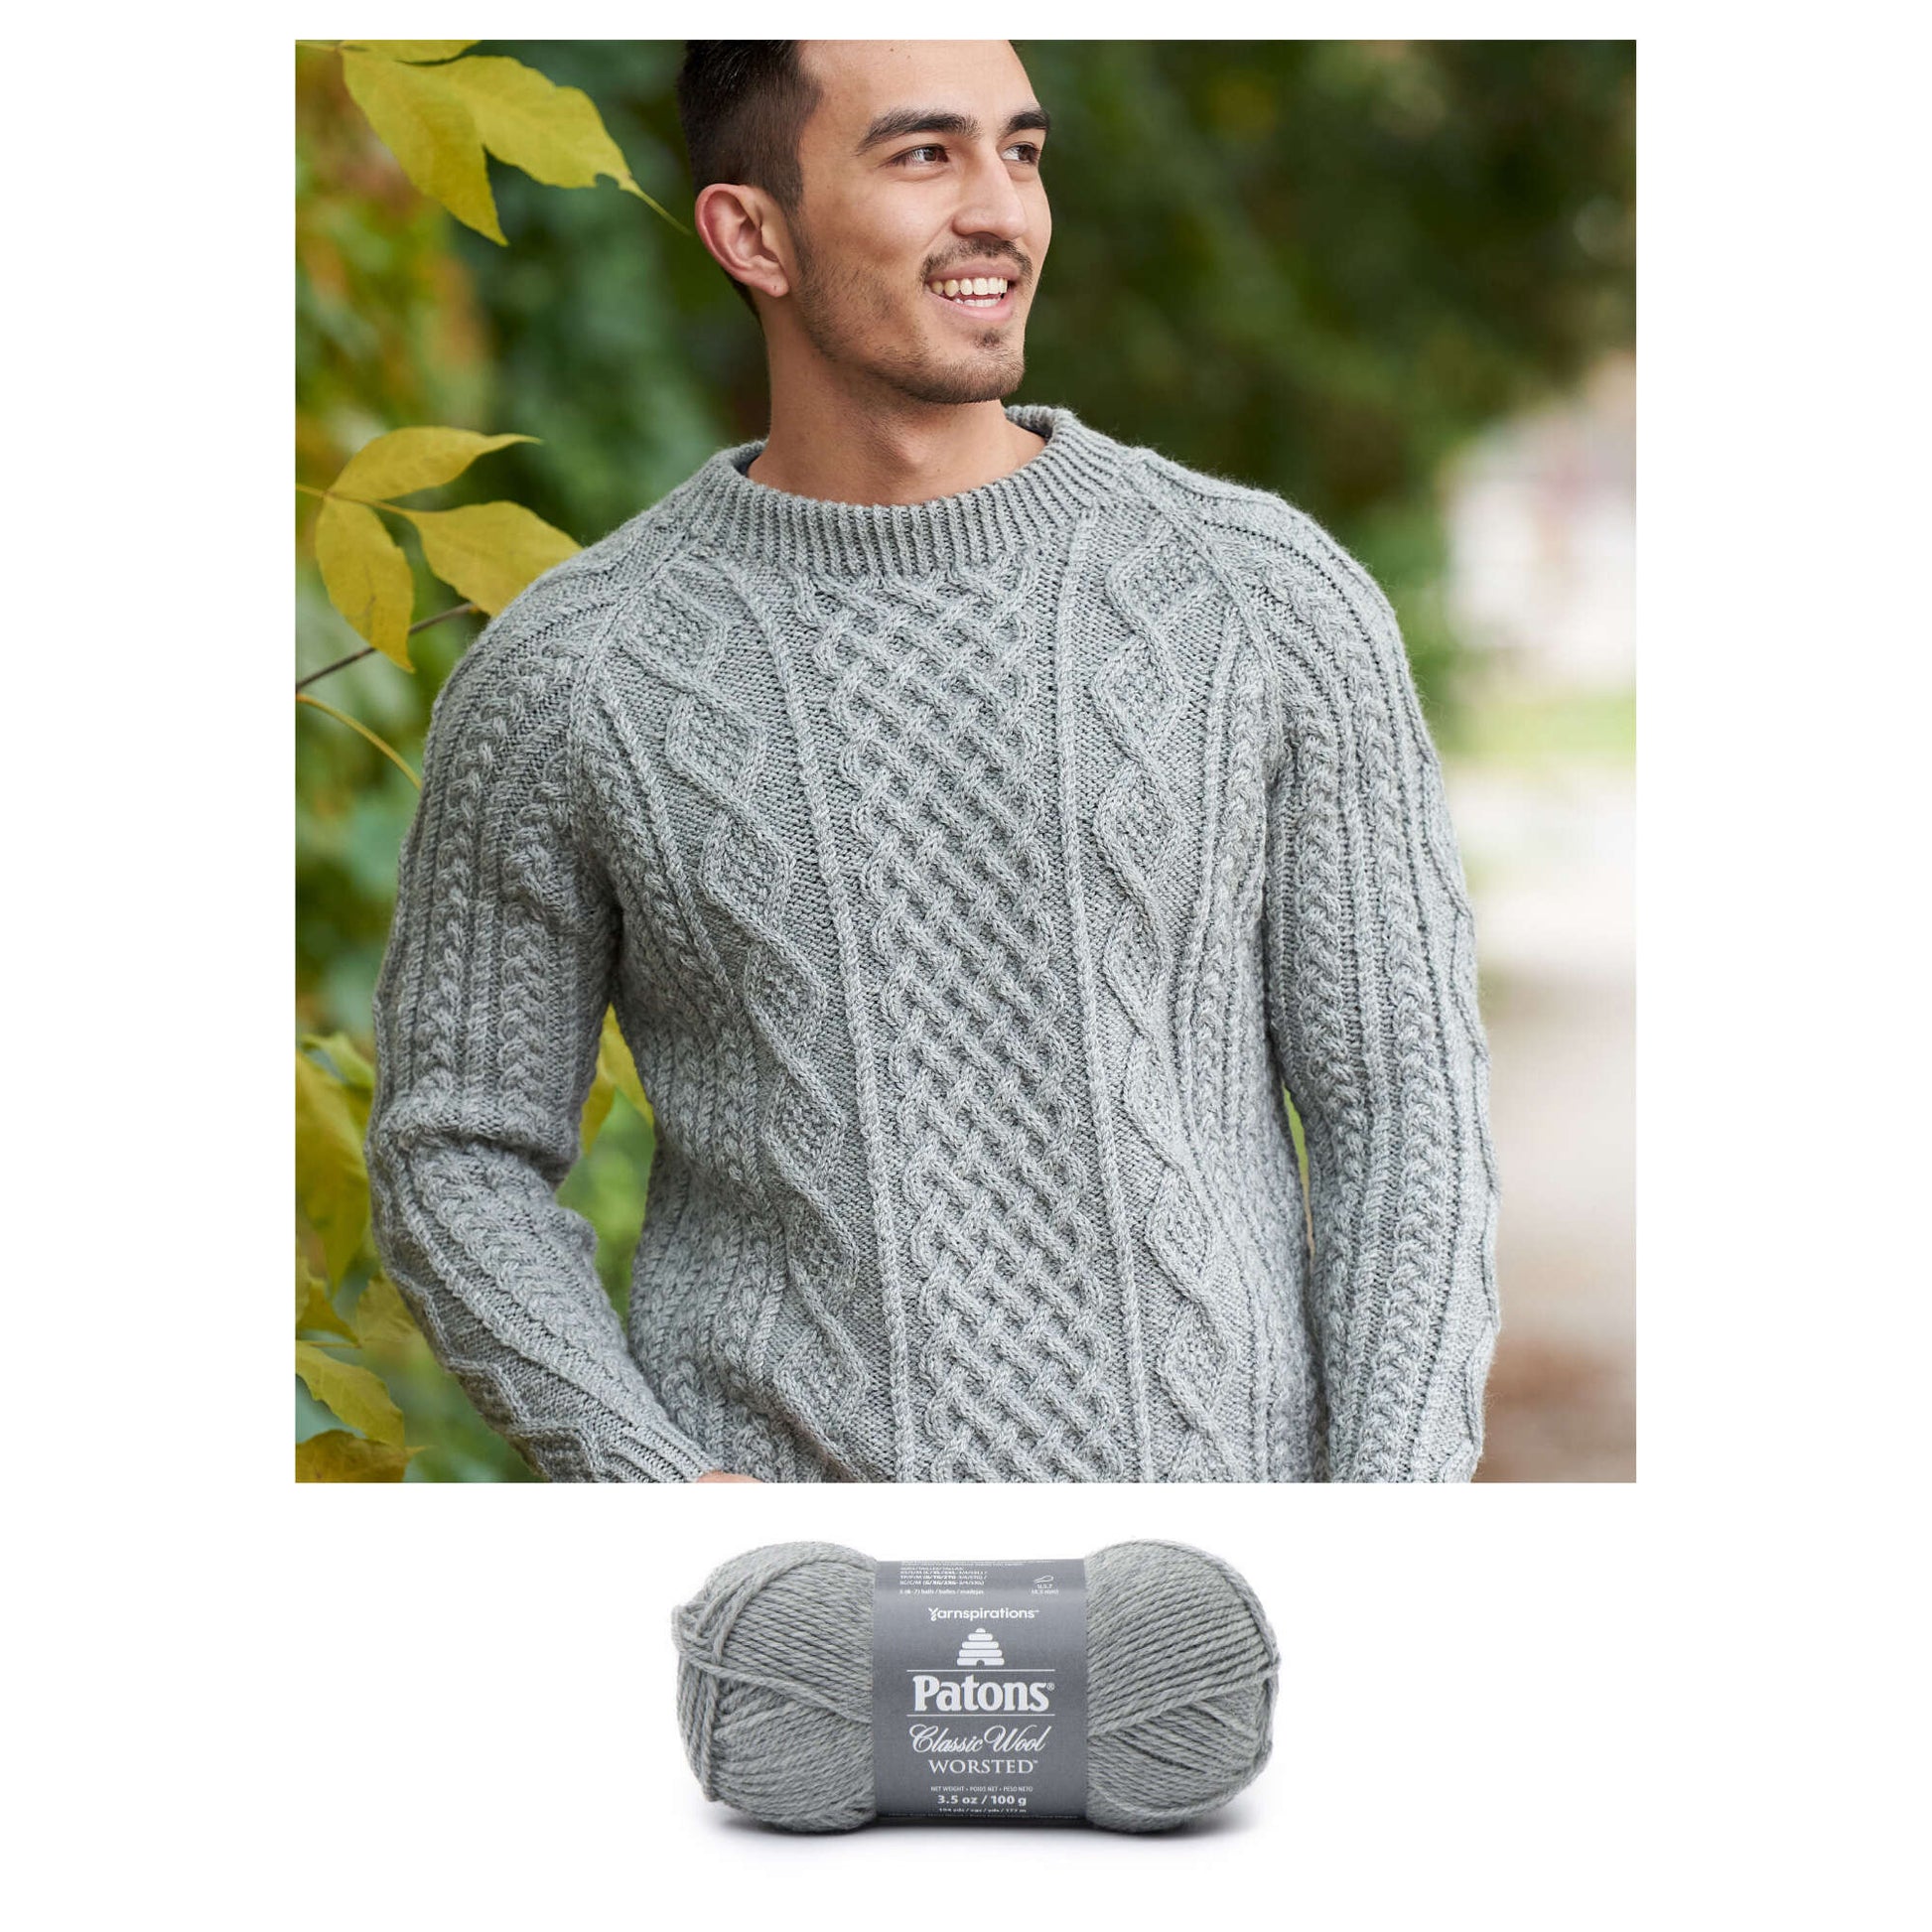 Free Patons Honeycomb Aran Sweater Knit Pattern